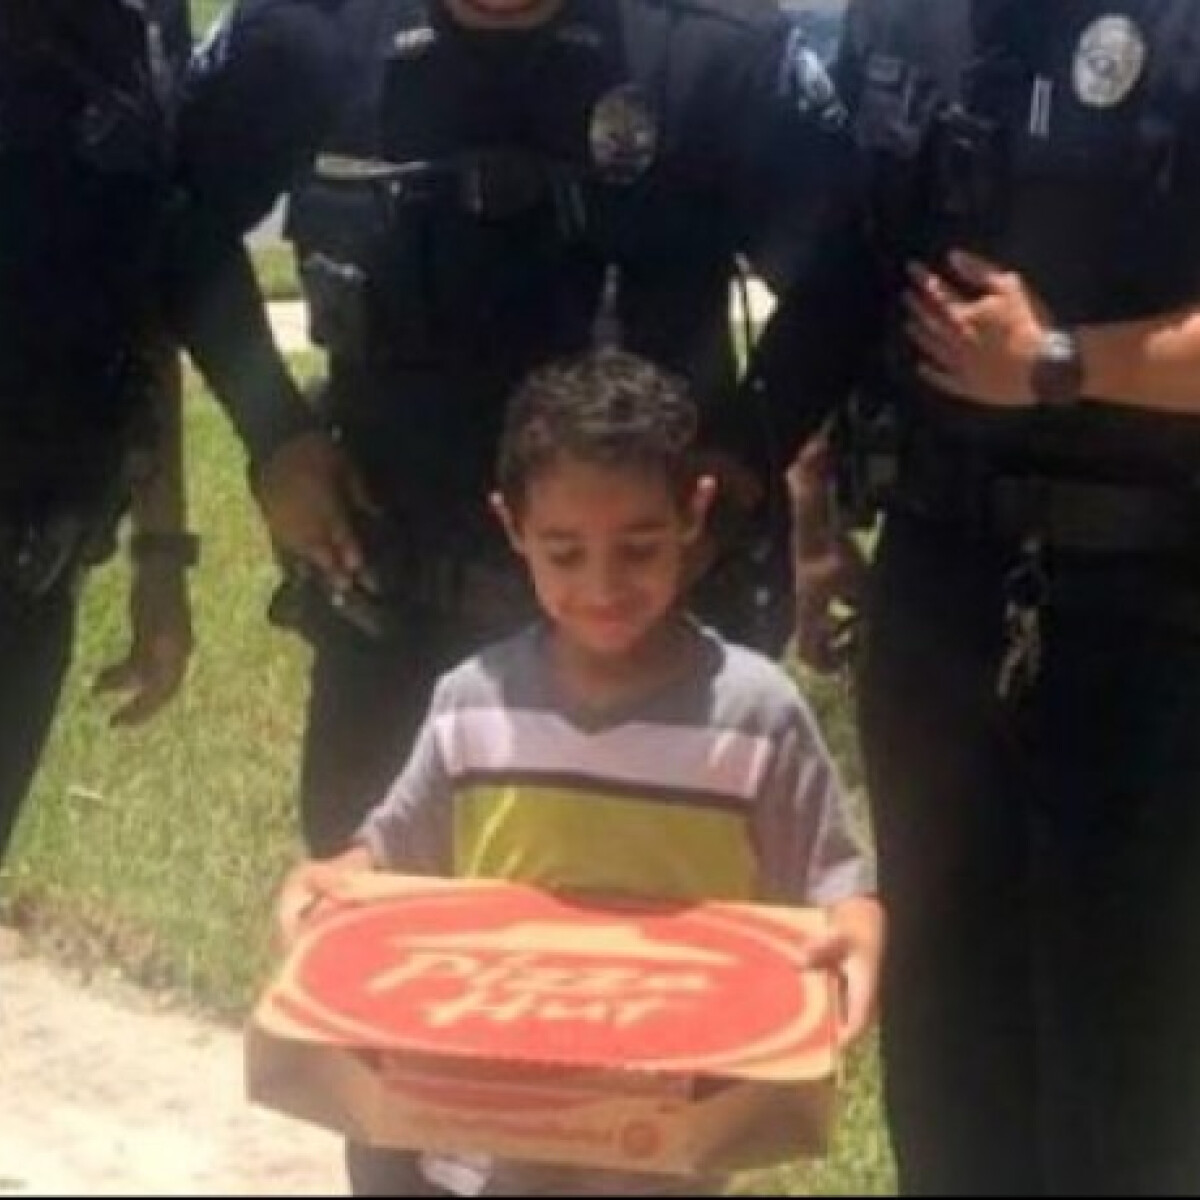 Ez a kisfiú igazi vészhelyzetnek hitte, hogy éhes - Szerinted kitől rendelt pizzát?